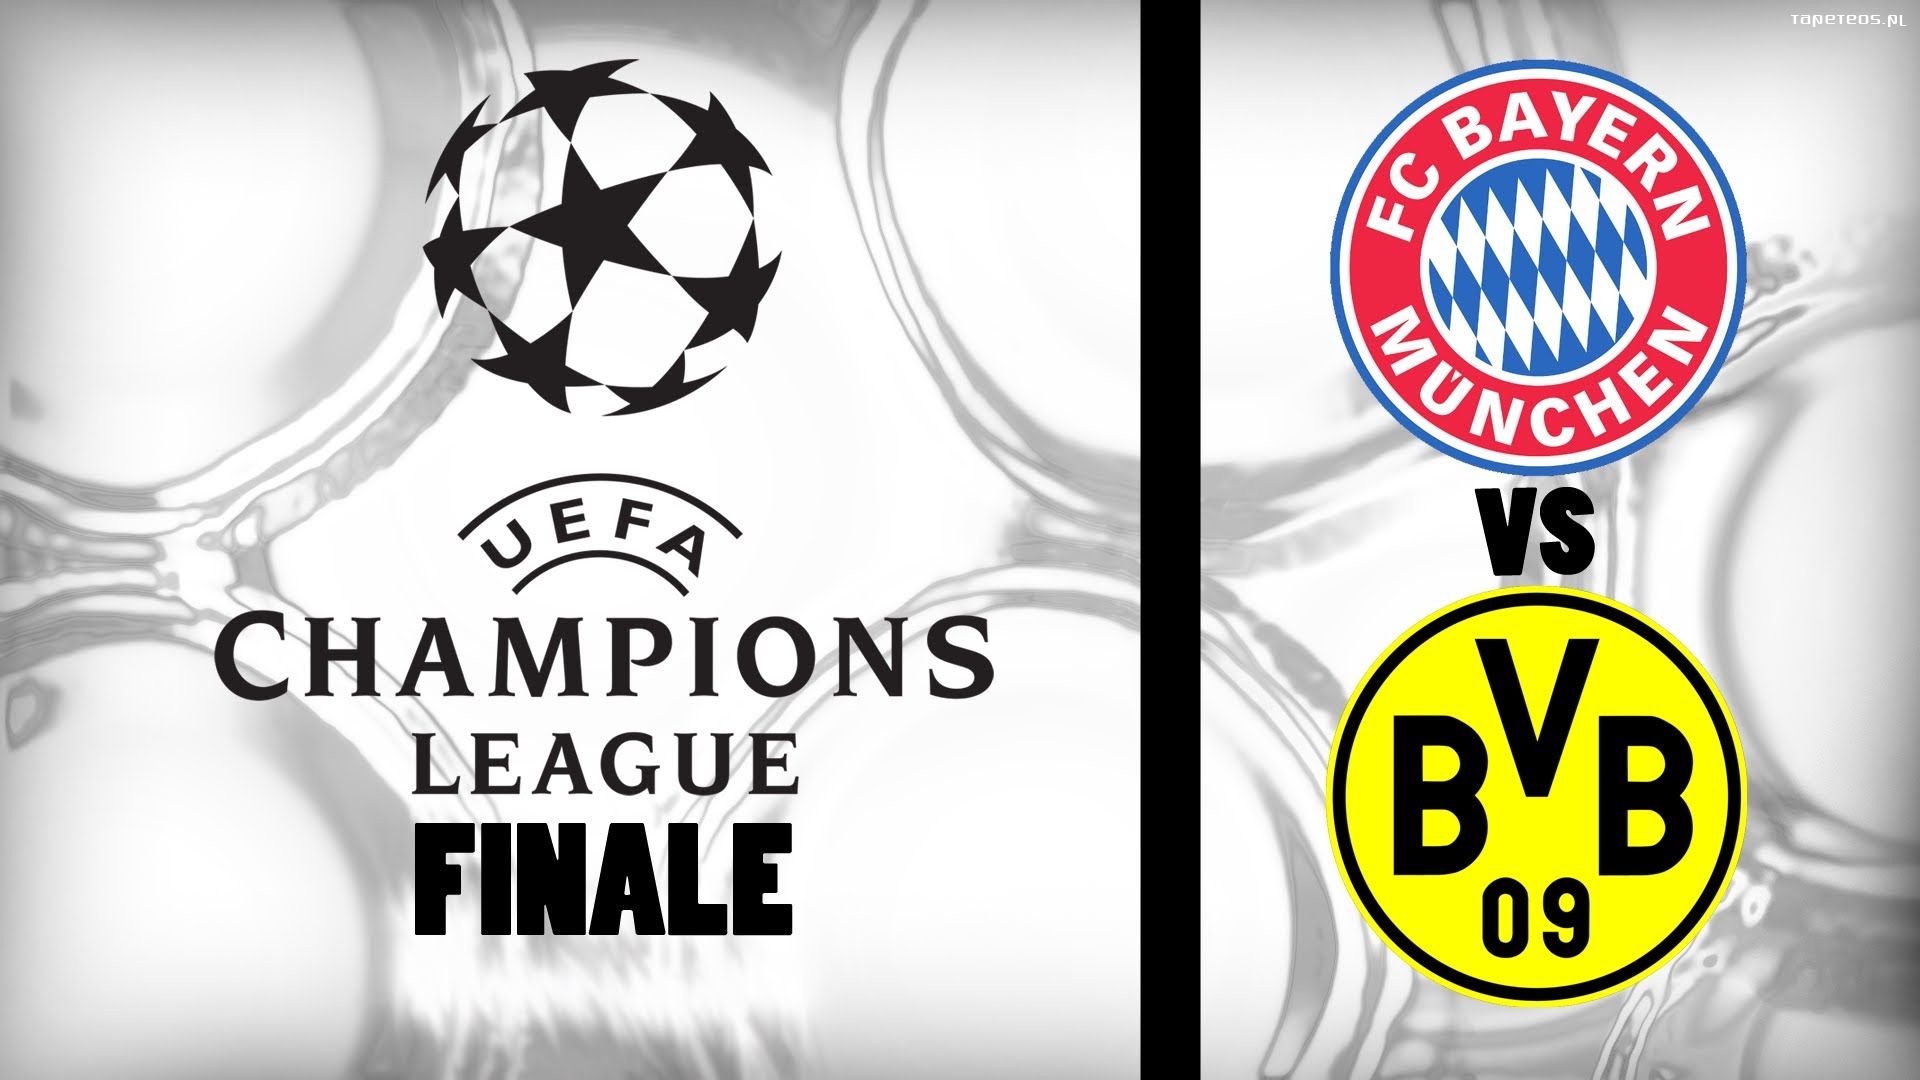 Borussia Dortmund vs Bayern Monachium 1920x1080 005 Final 2013